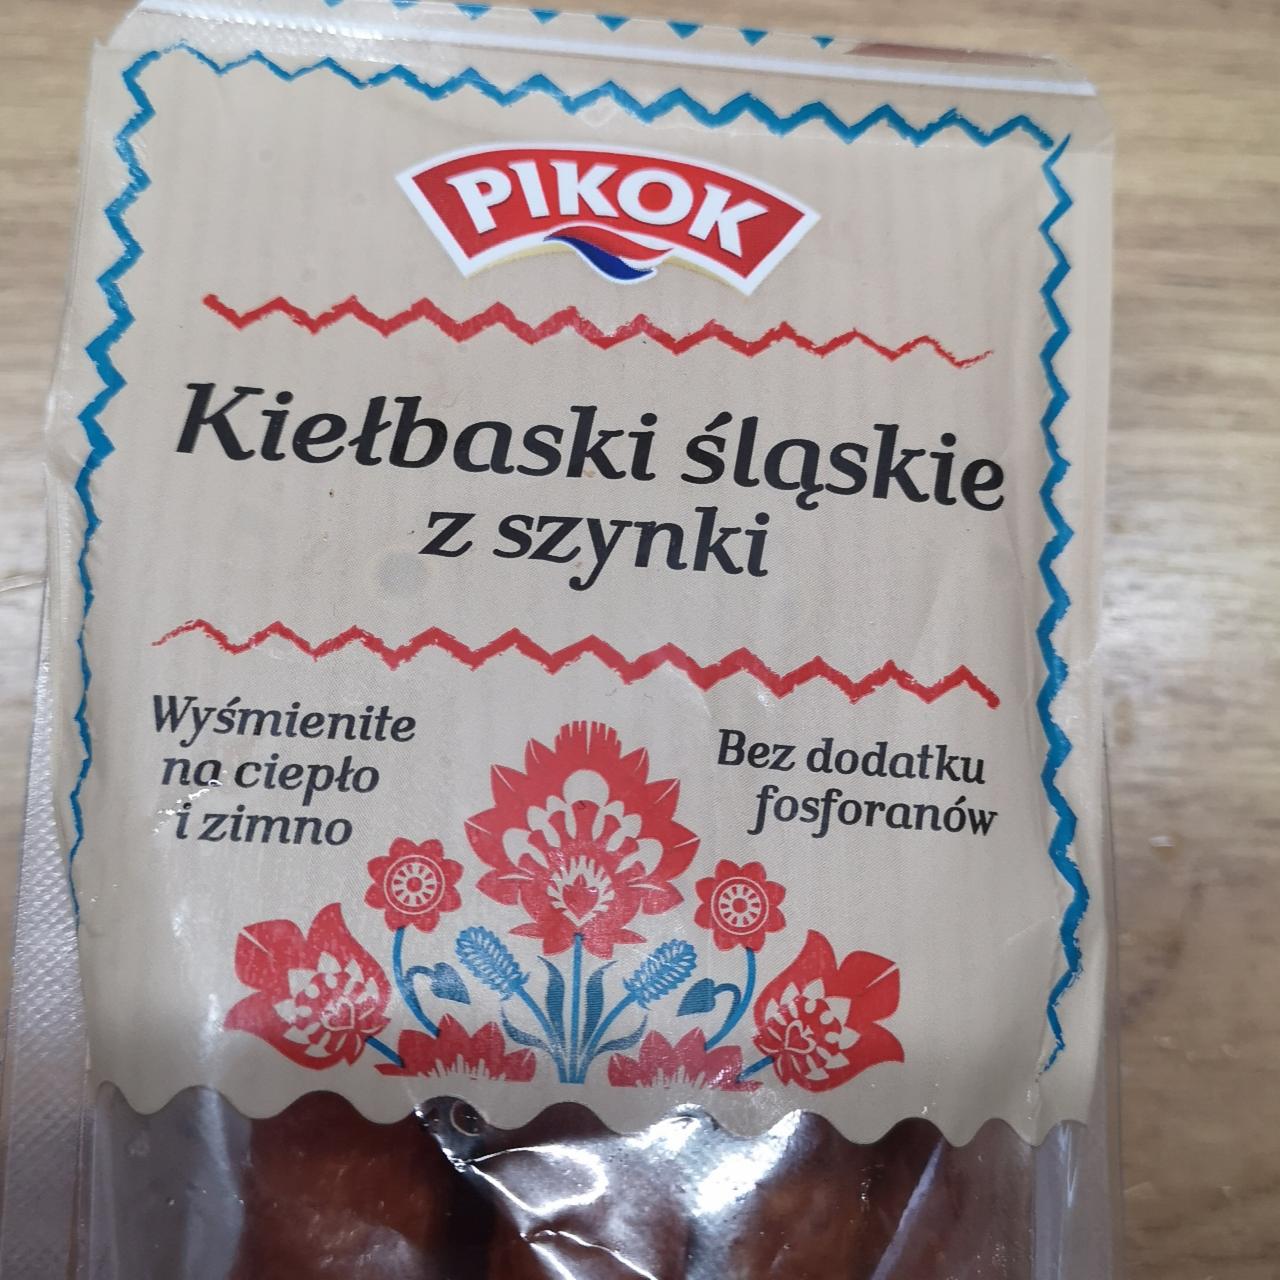 Fotografie - Kielbaski slaskie z szynki Pikok